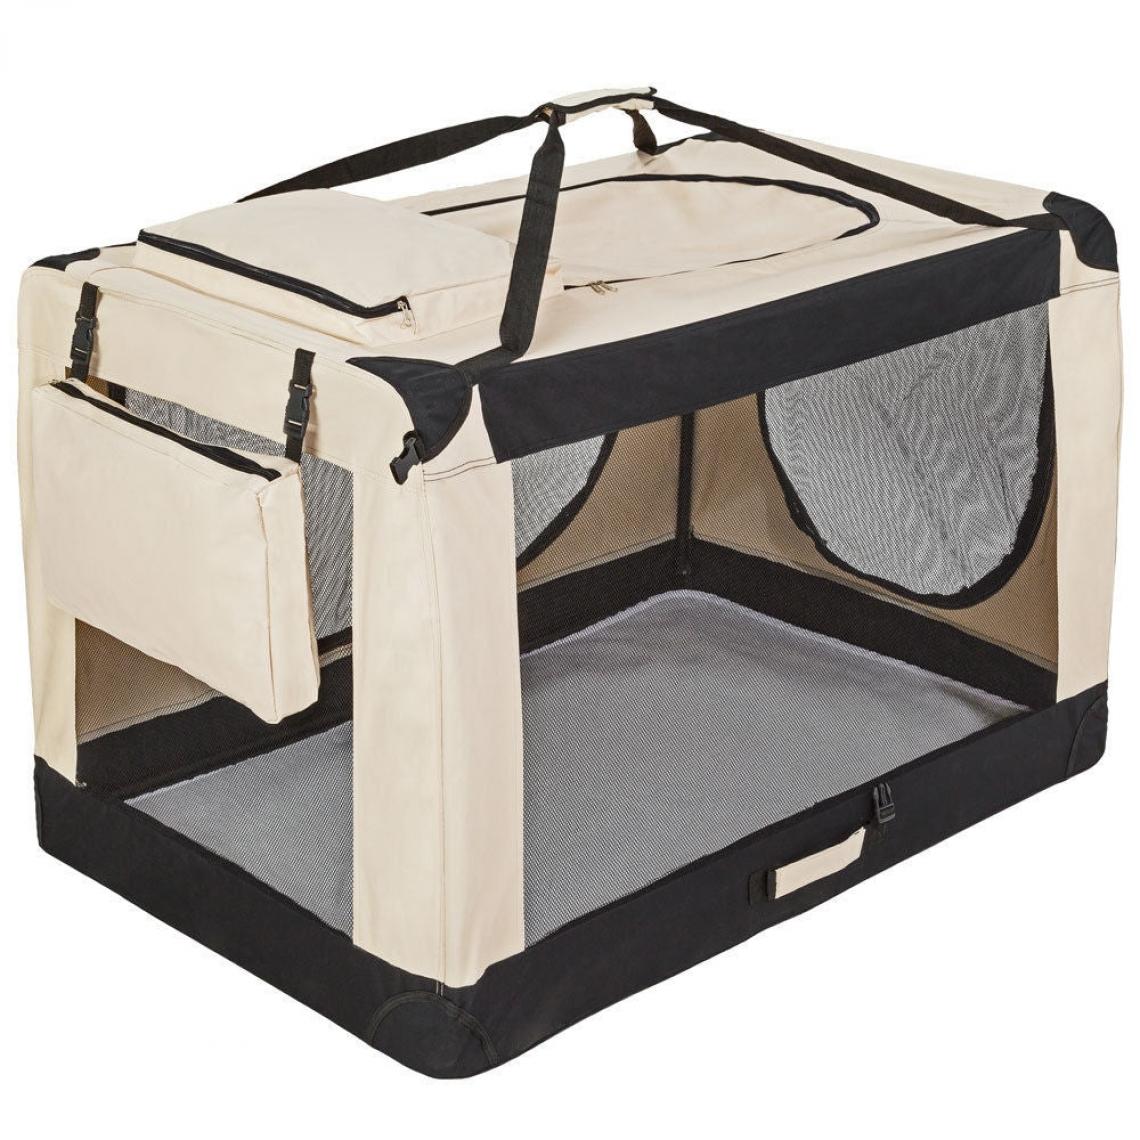 Helloshop26 - Cage de transport pour chien sac box panier caisse beige et noir 121x77x79 cm 08_0000517 - Equipement de transport pour chat